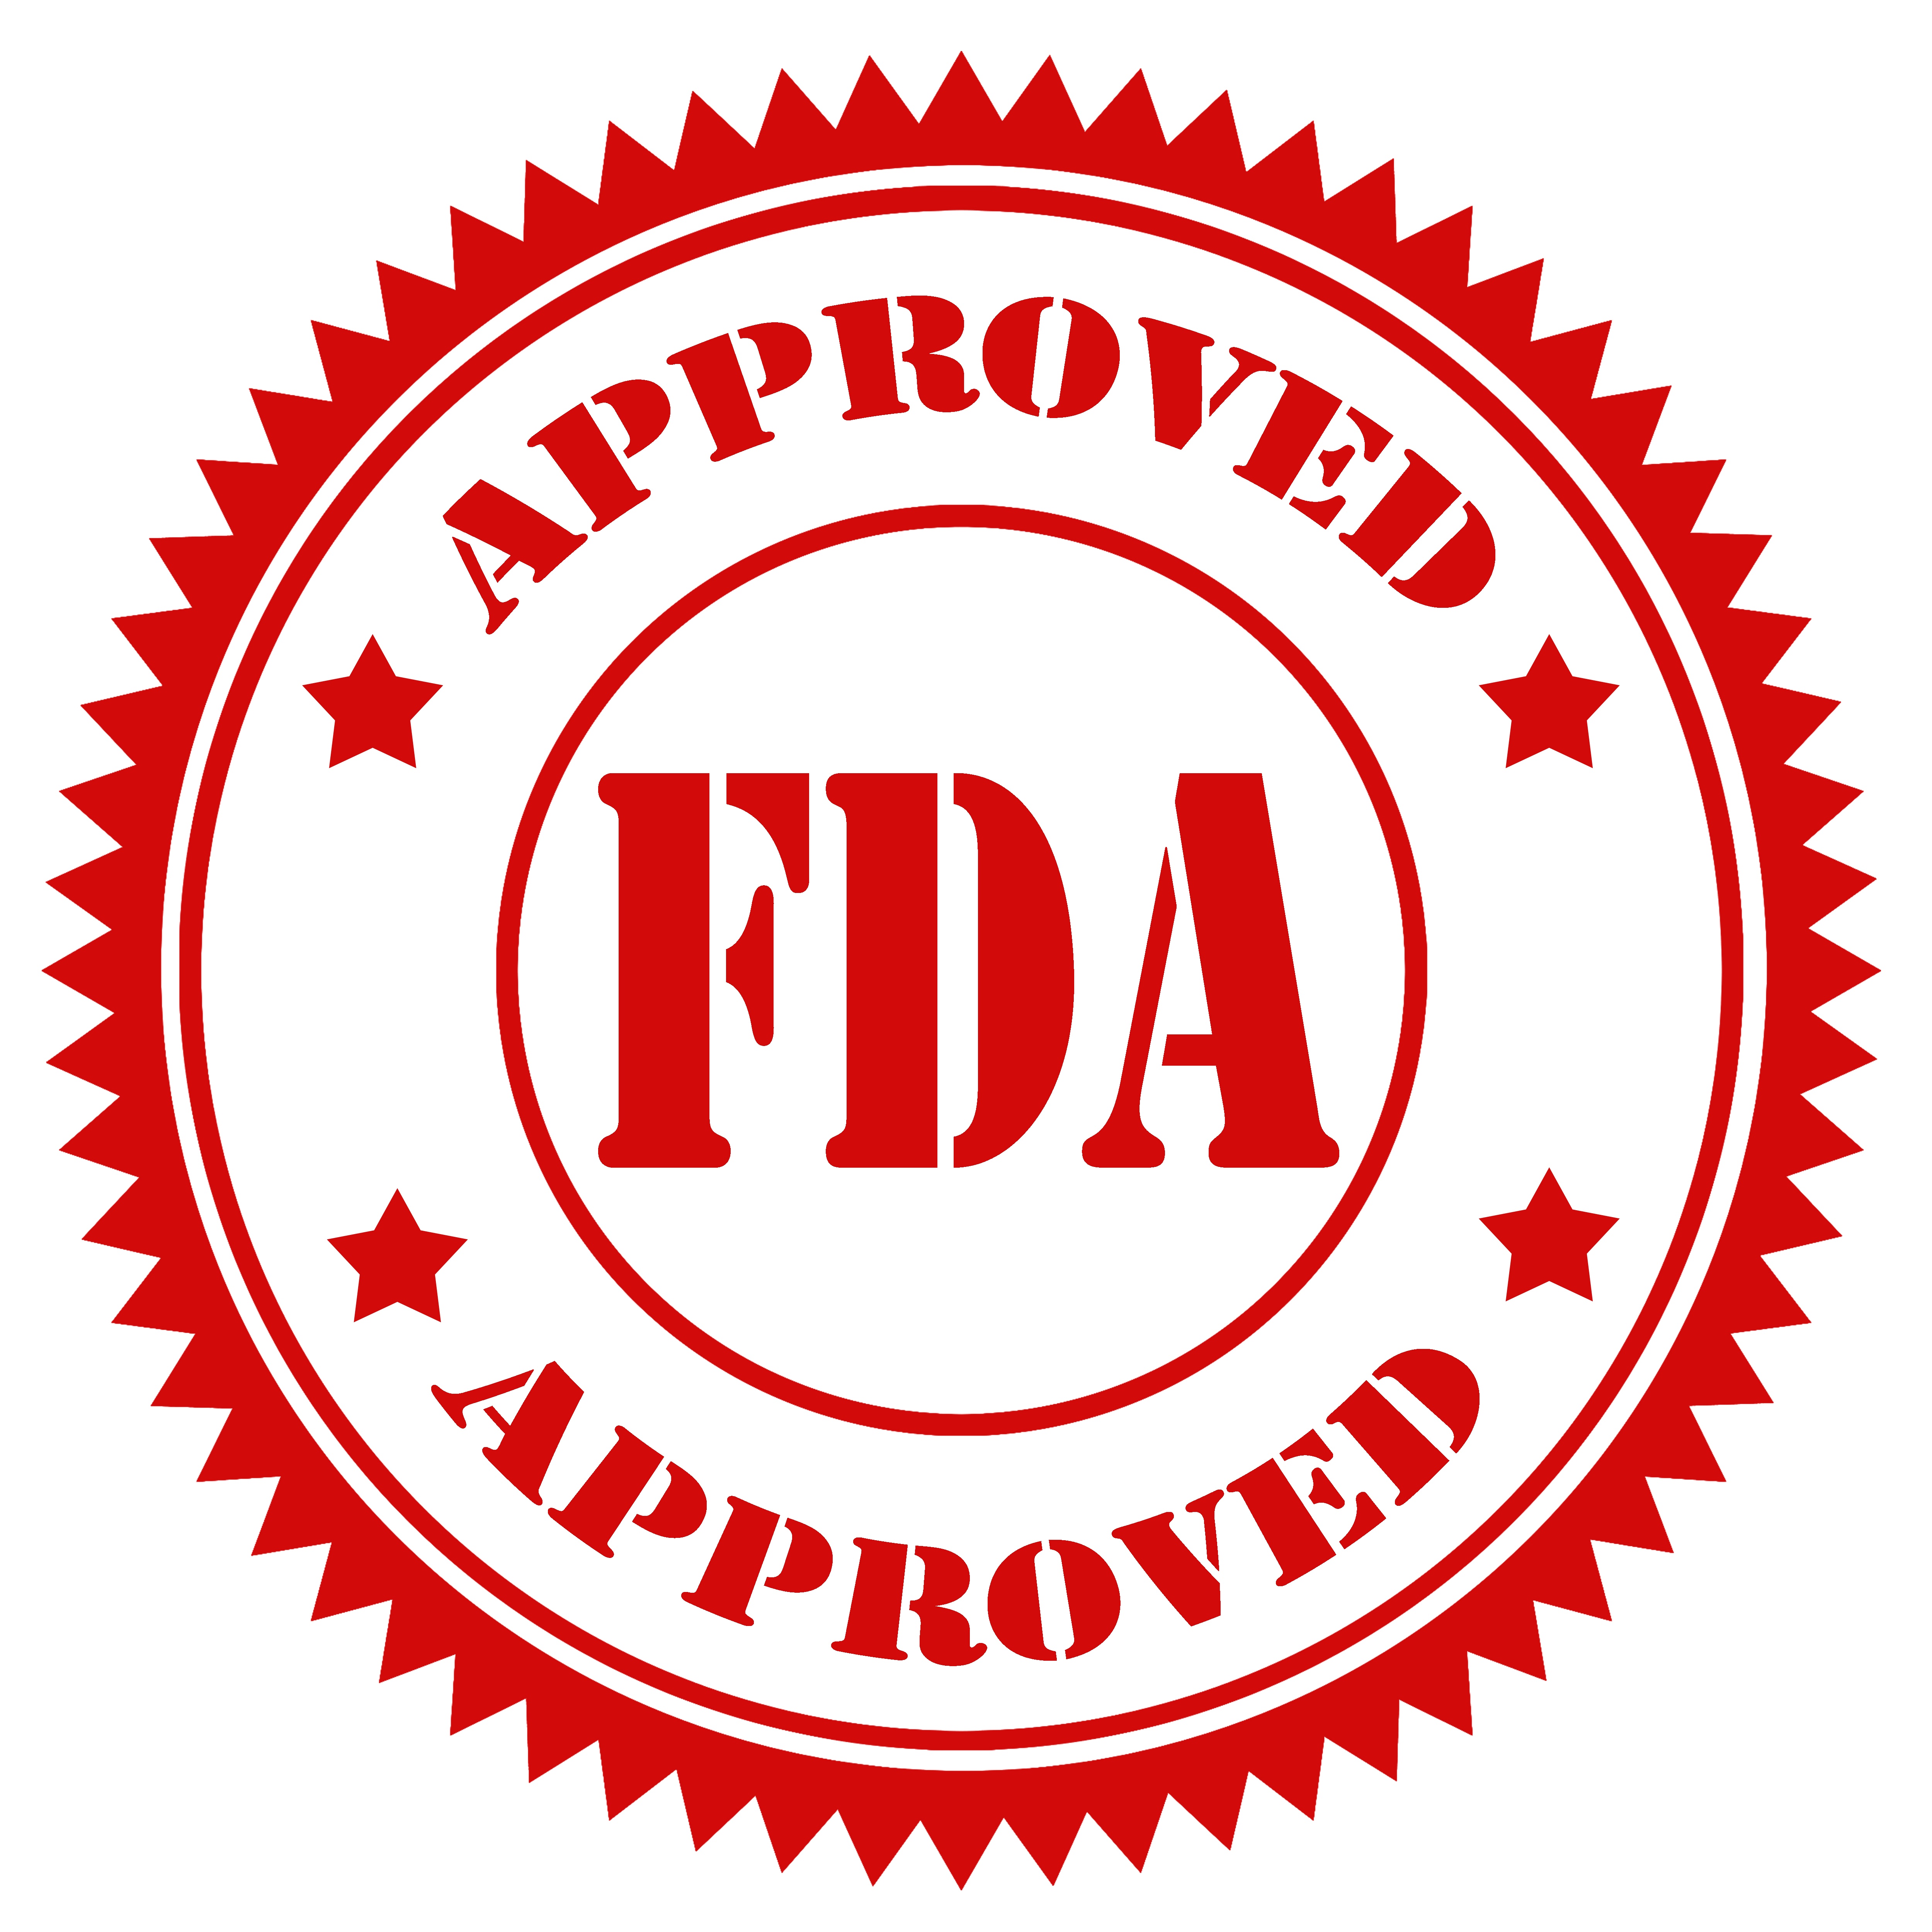 Do I Really Need FDA Approval?